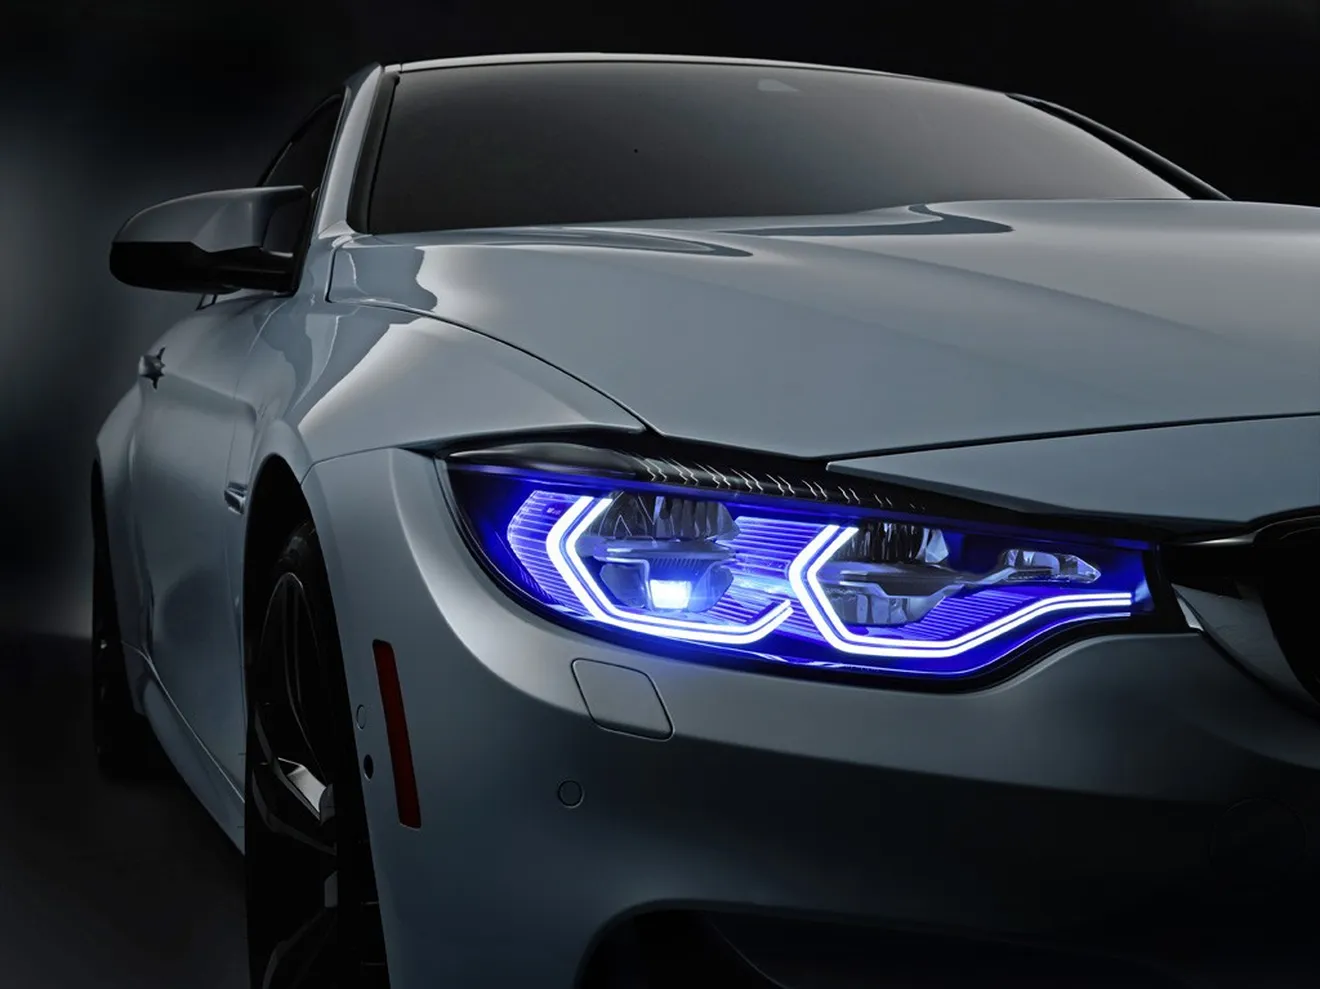 EXCLUSIVA: El radical BMW M4 GTS tendrá iluminación láser y OLED